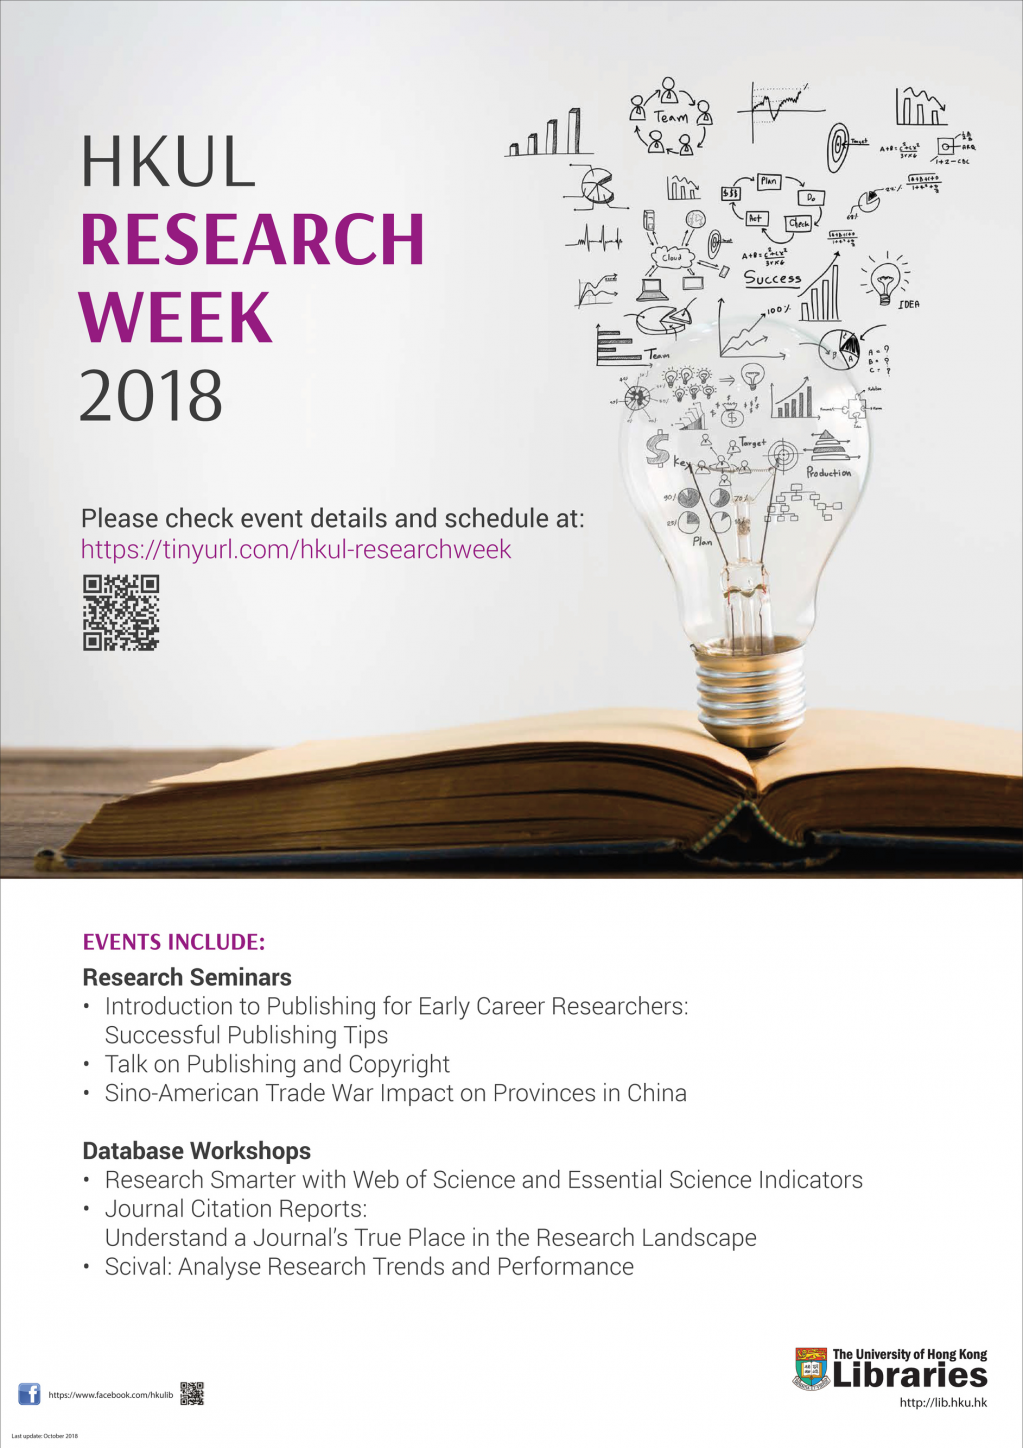 HKU Libraries Research Week 2018